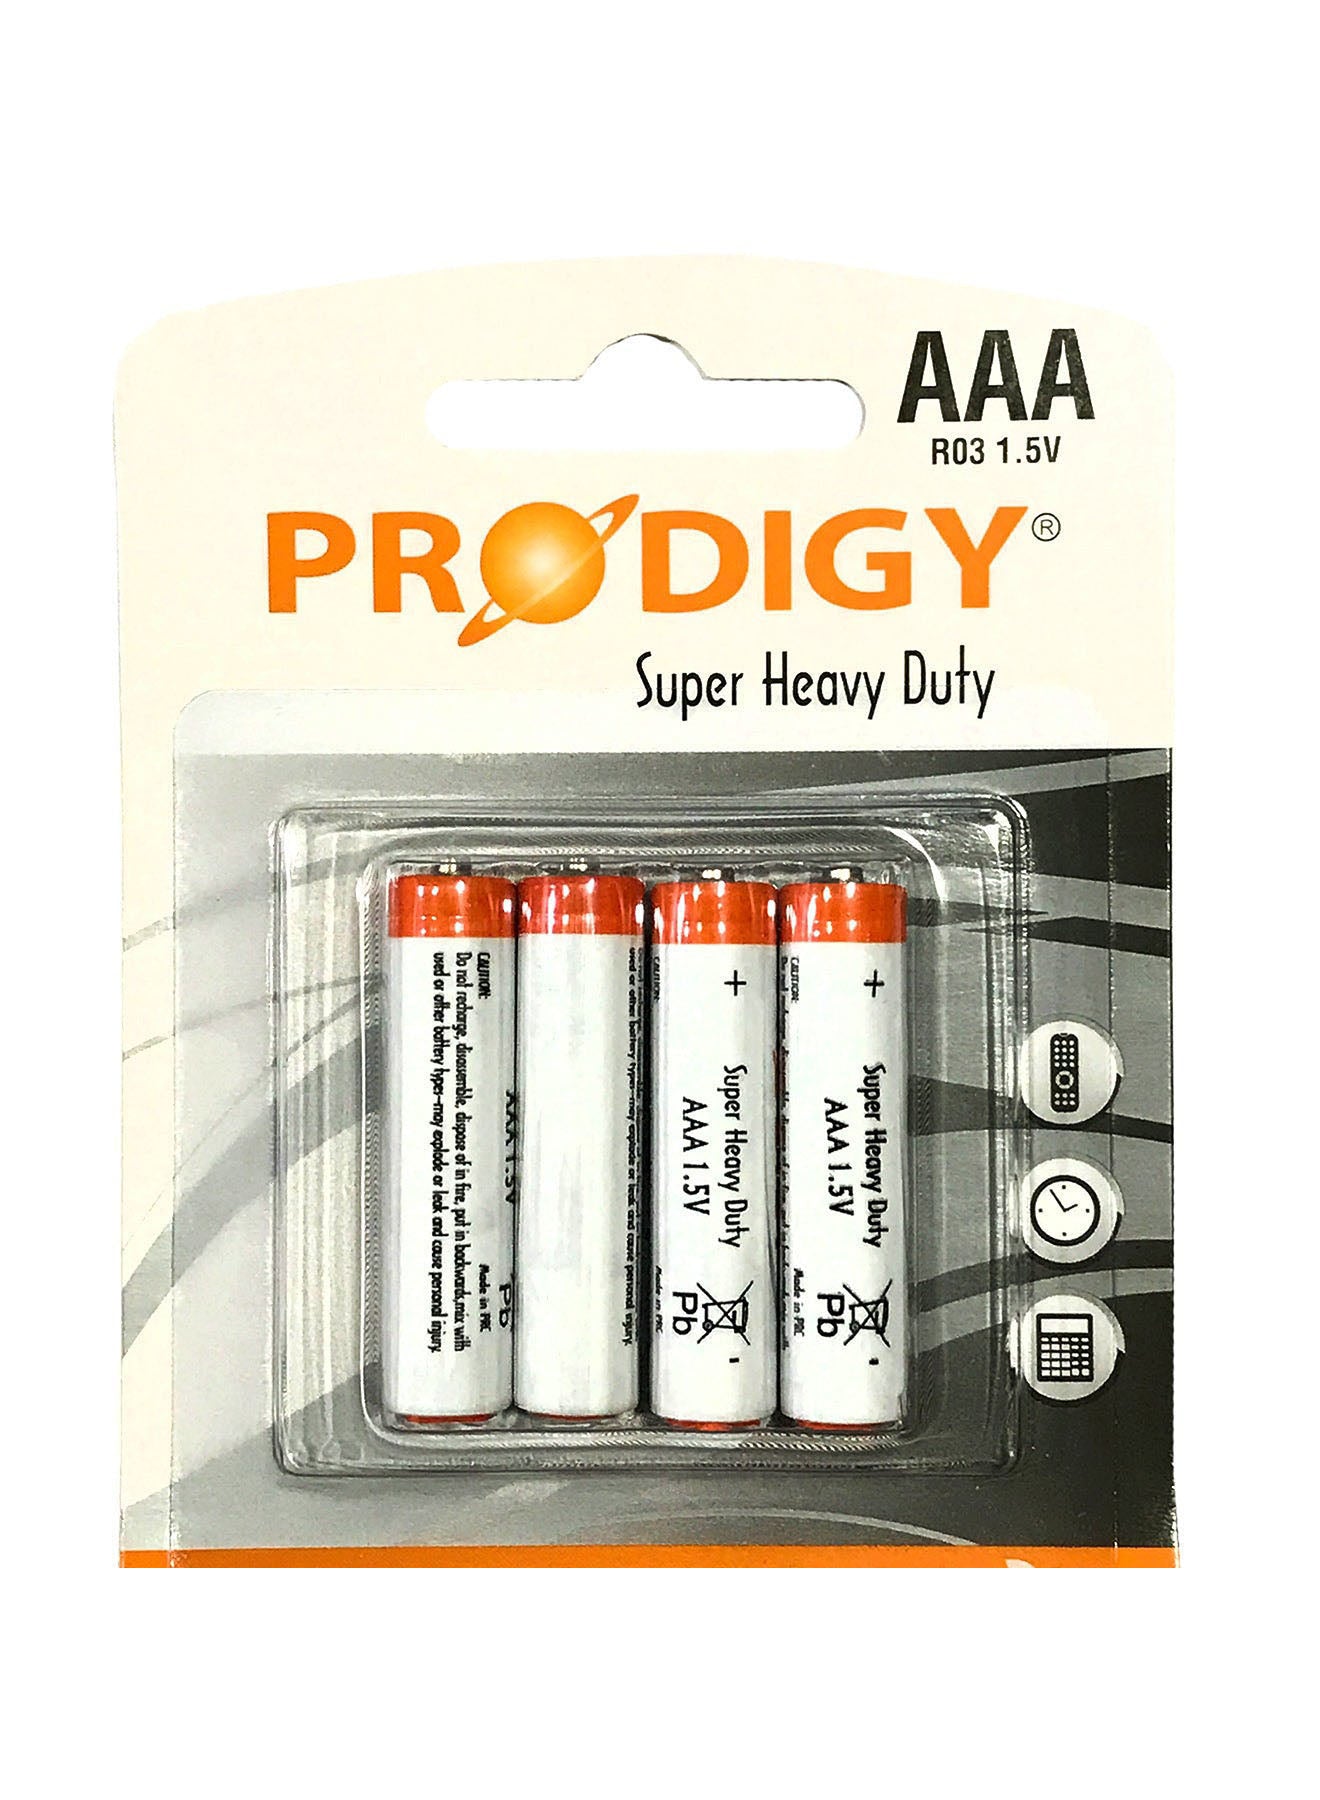 Prodigy Super Heavy Duty R03PVC 15V AAA4